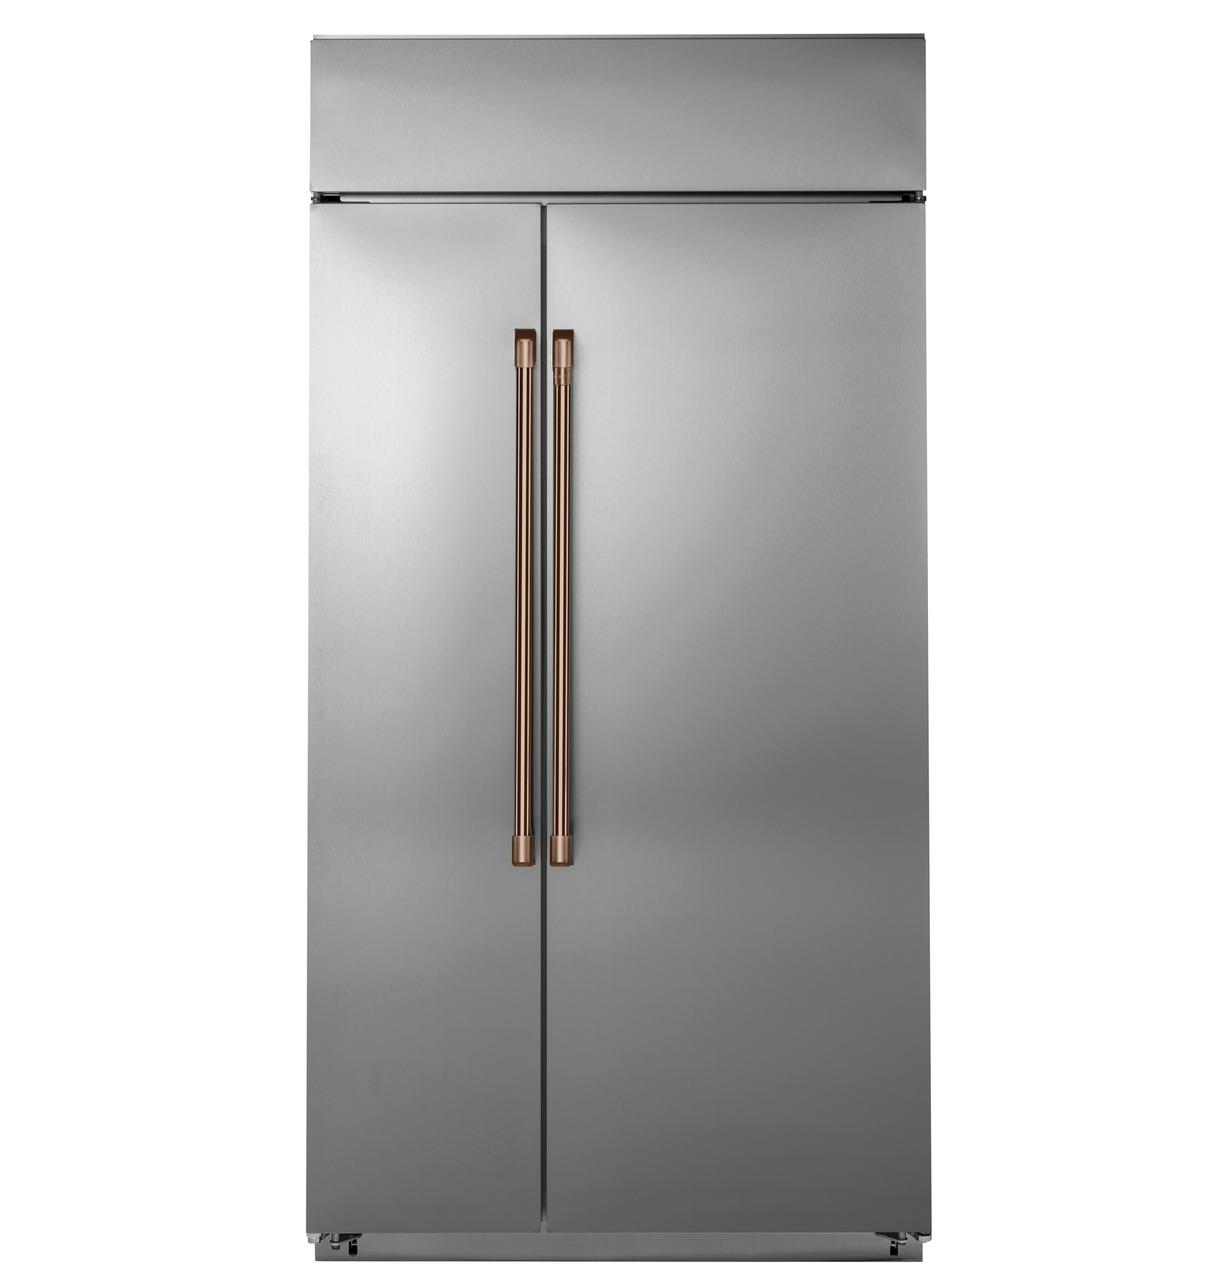 Cafe Caf(eback)™ 48" Smart Built-In Side-by-Side Refrigerator